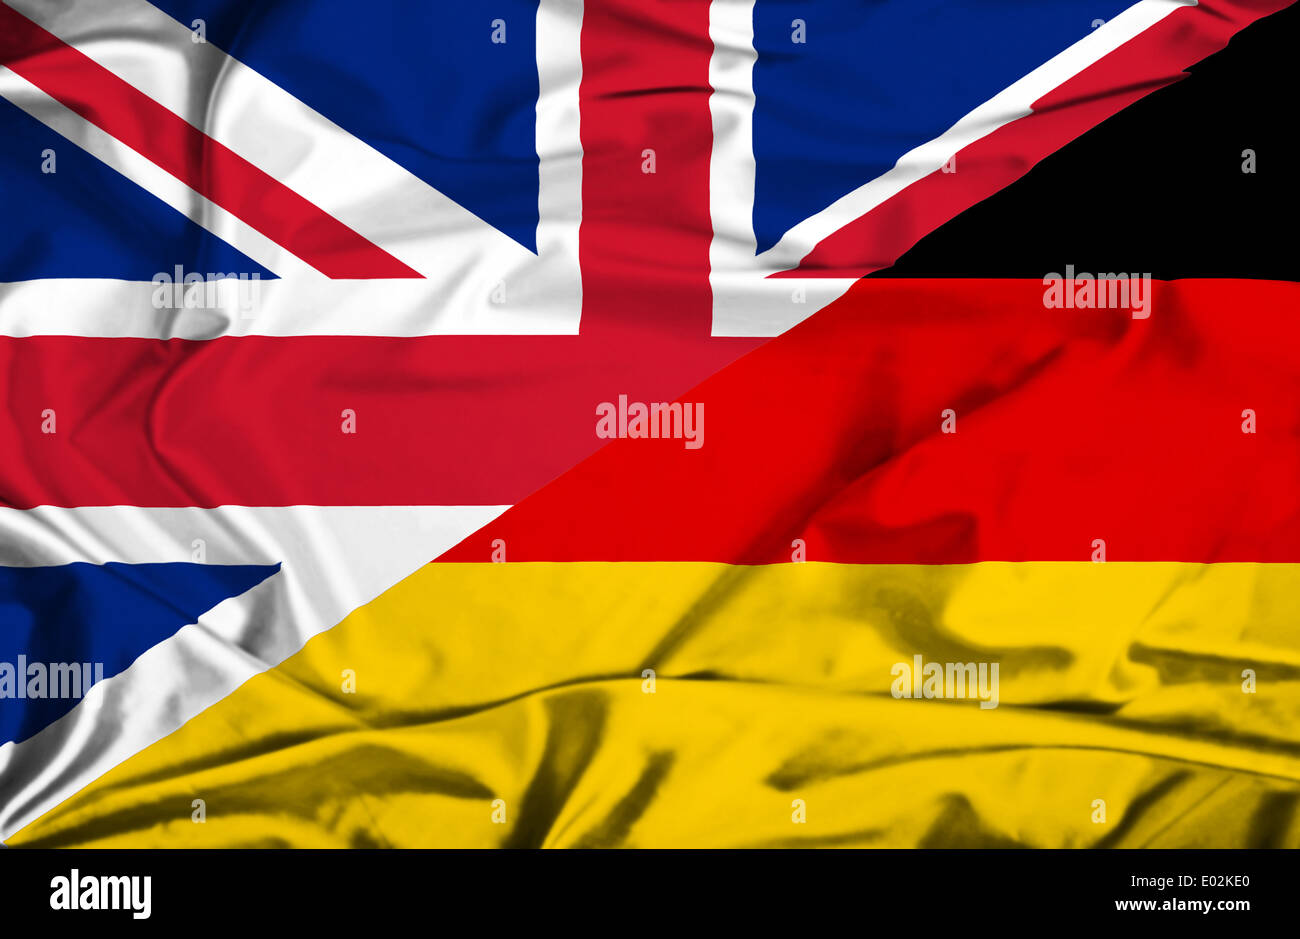 Германия на английском. Флаг Великобритании Германии. Германия и Великобритания. Английский и немецкий флаг. Германия против Великобритании.